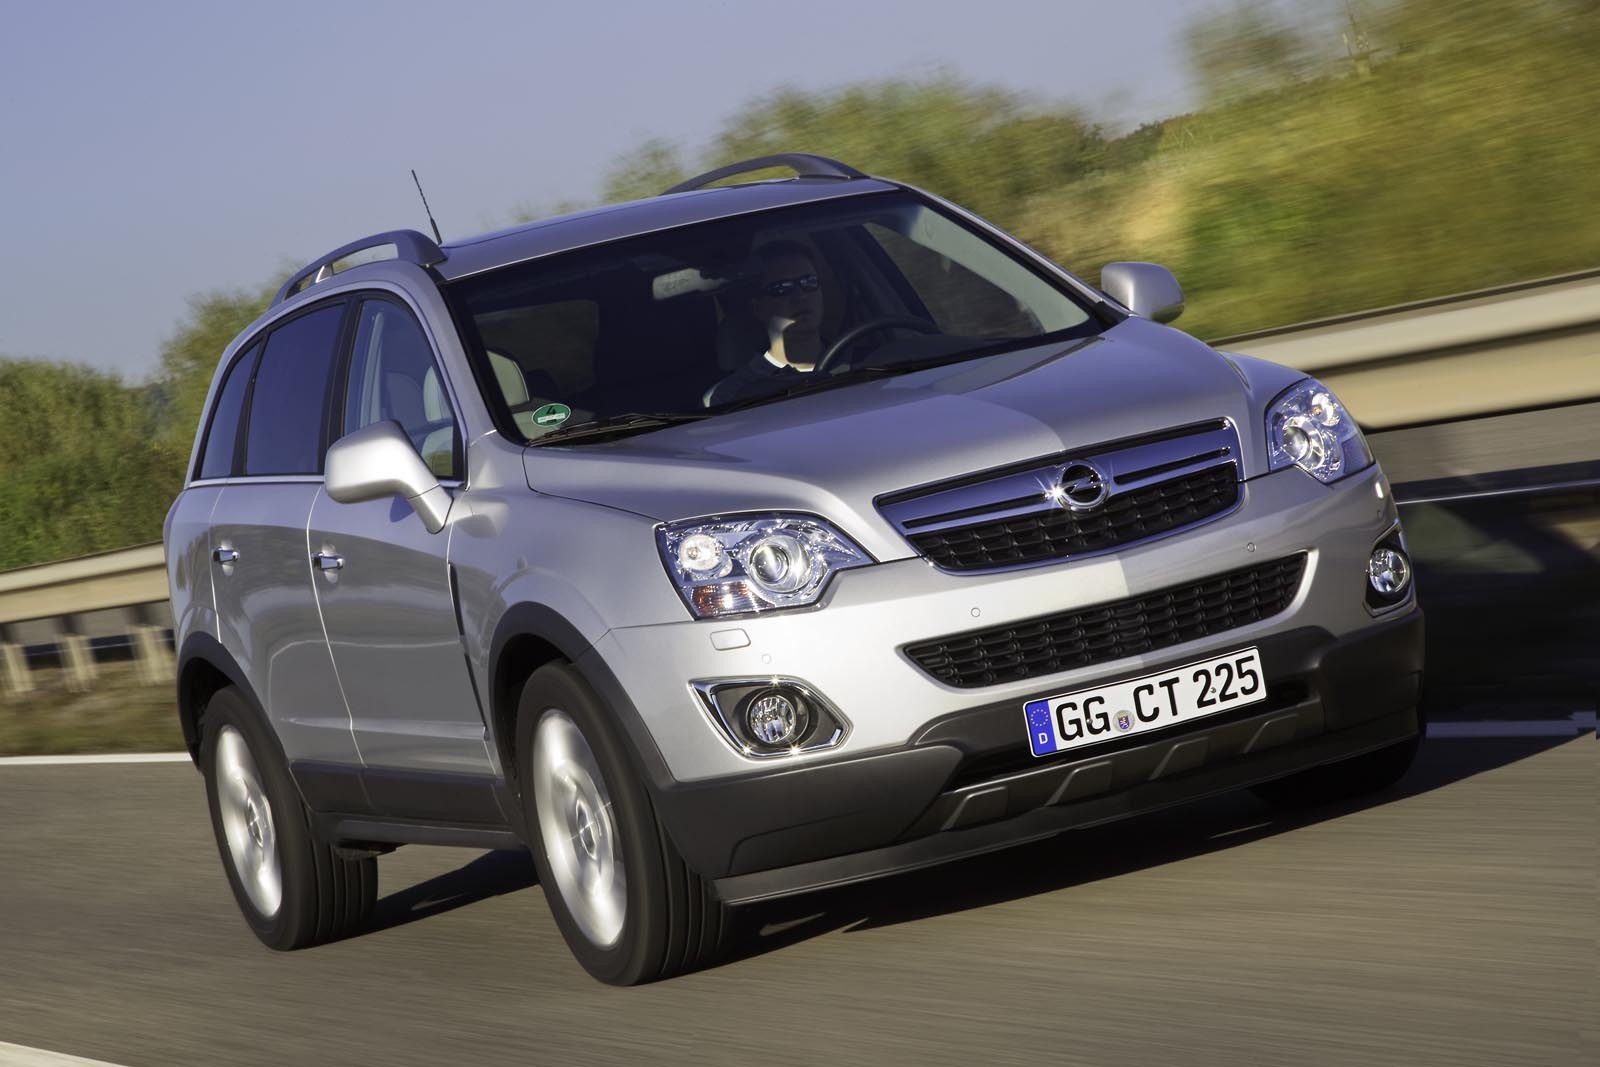 Motorul diesel de pe Opel Antara facelift are doua variante de putere: 163 CP si 184 CP